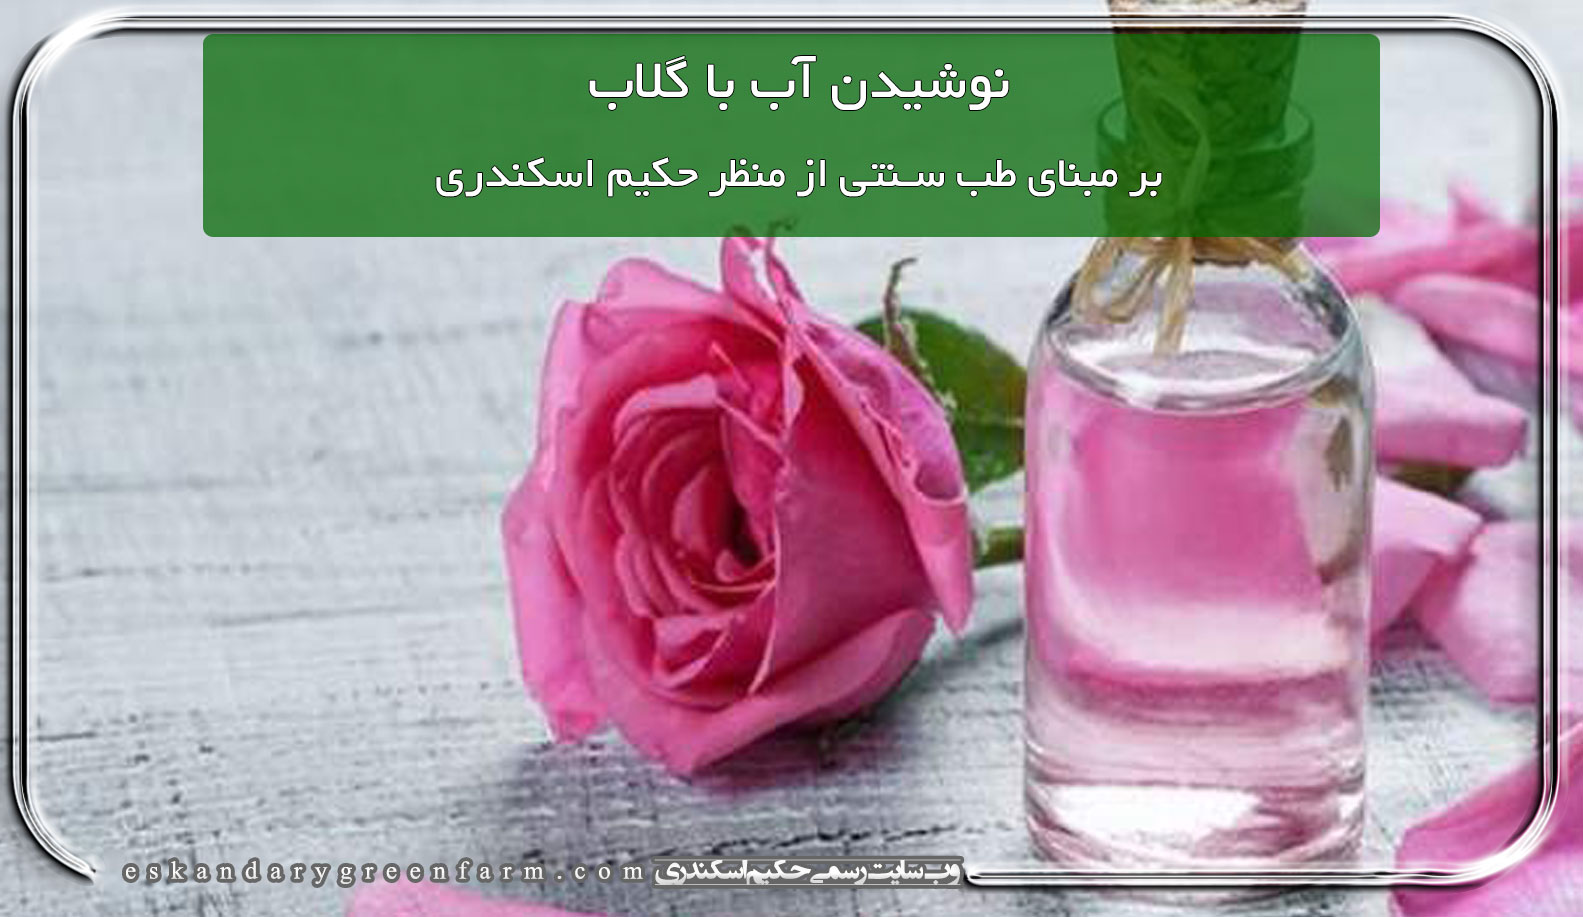 نوشیدن آب با گلاب بر مبنای طب سنتی